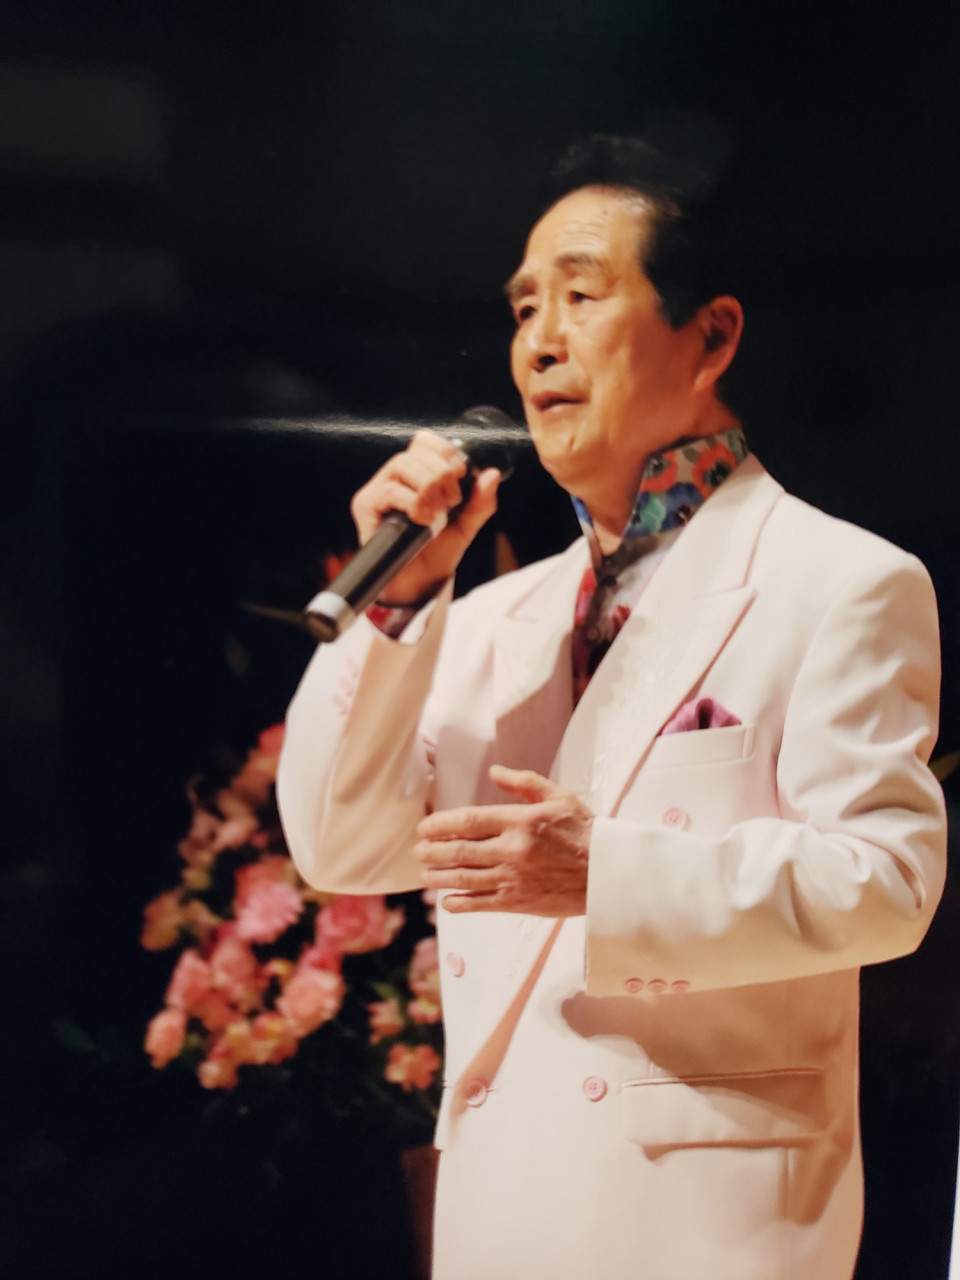 ゲストで唄った2曲目は「横浜のベイ・ブルース」のカップリング曲で「素晴らしき日本」です。